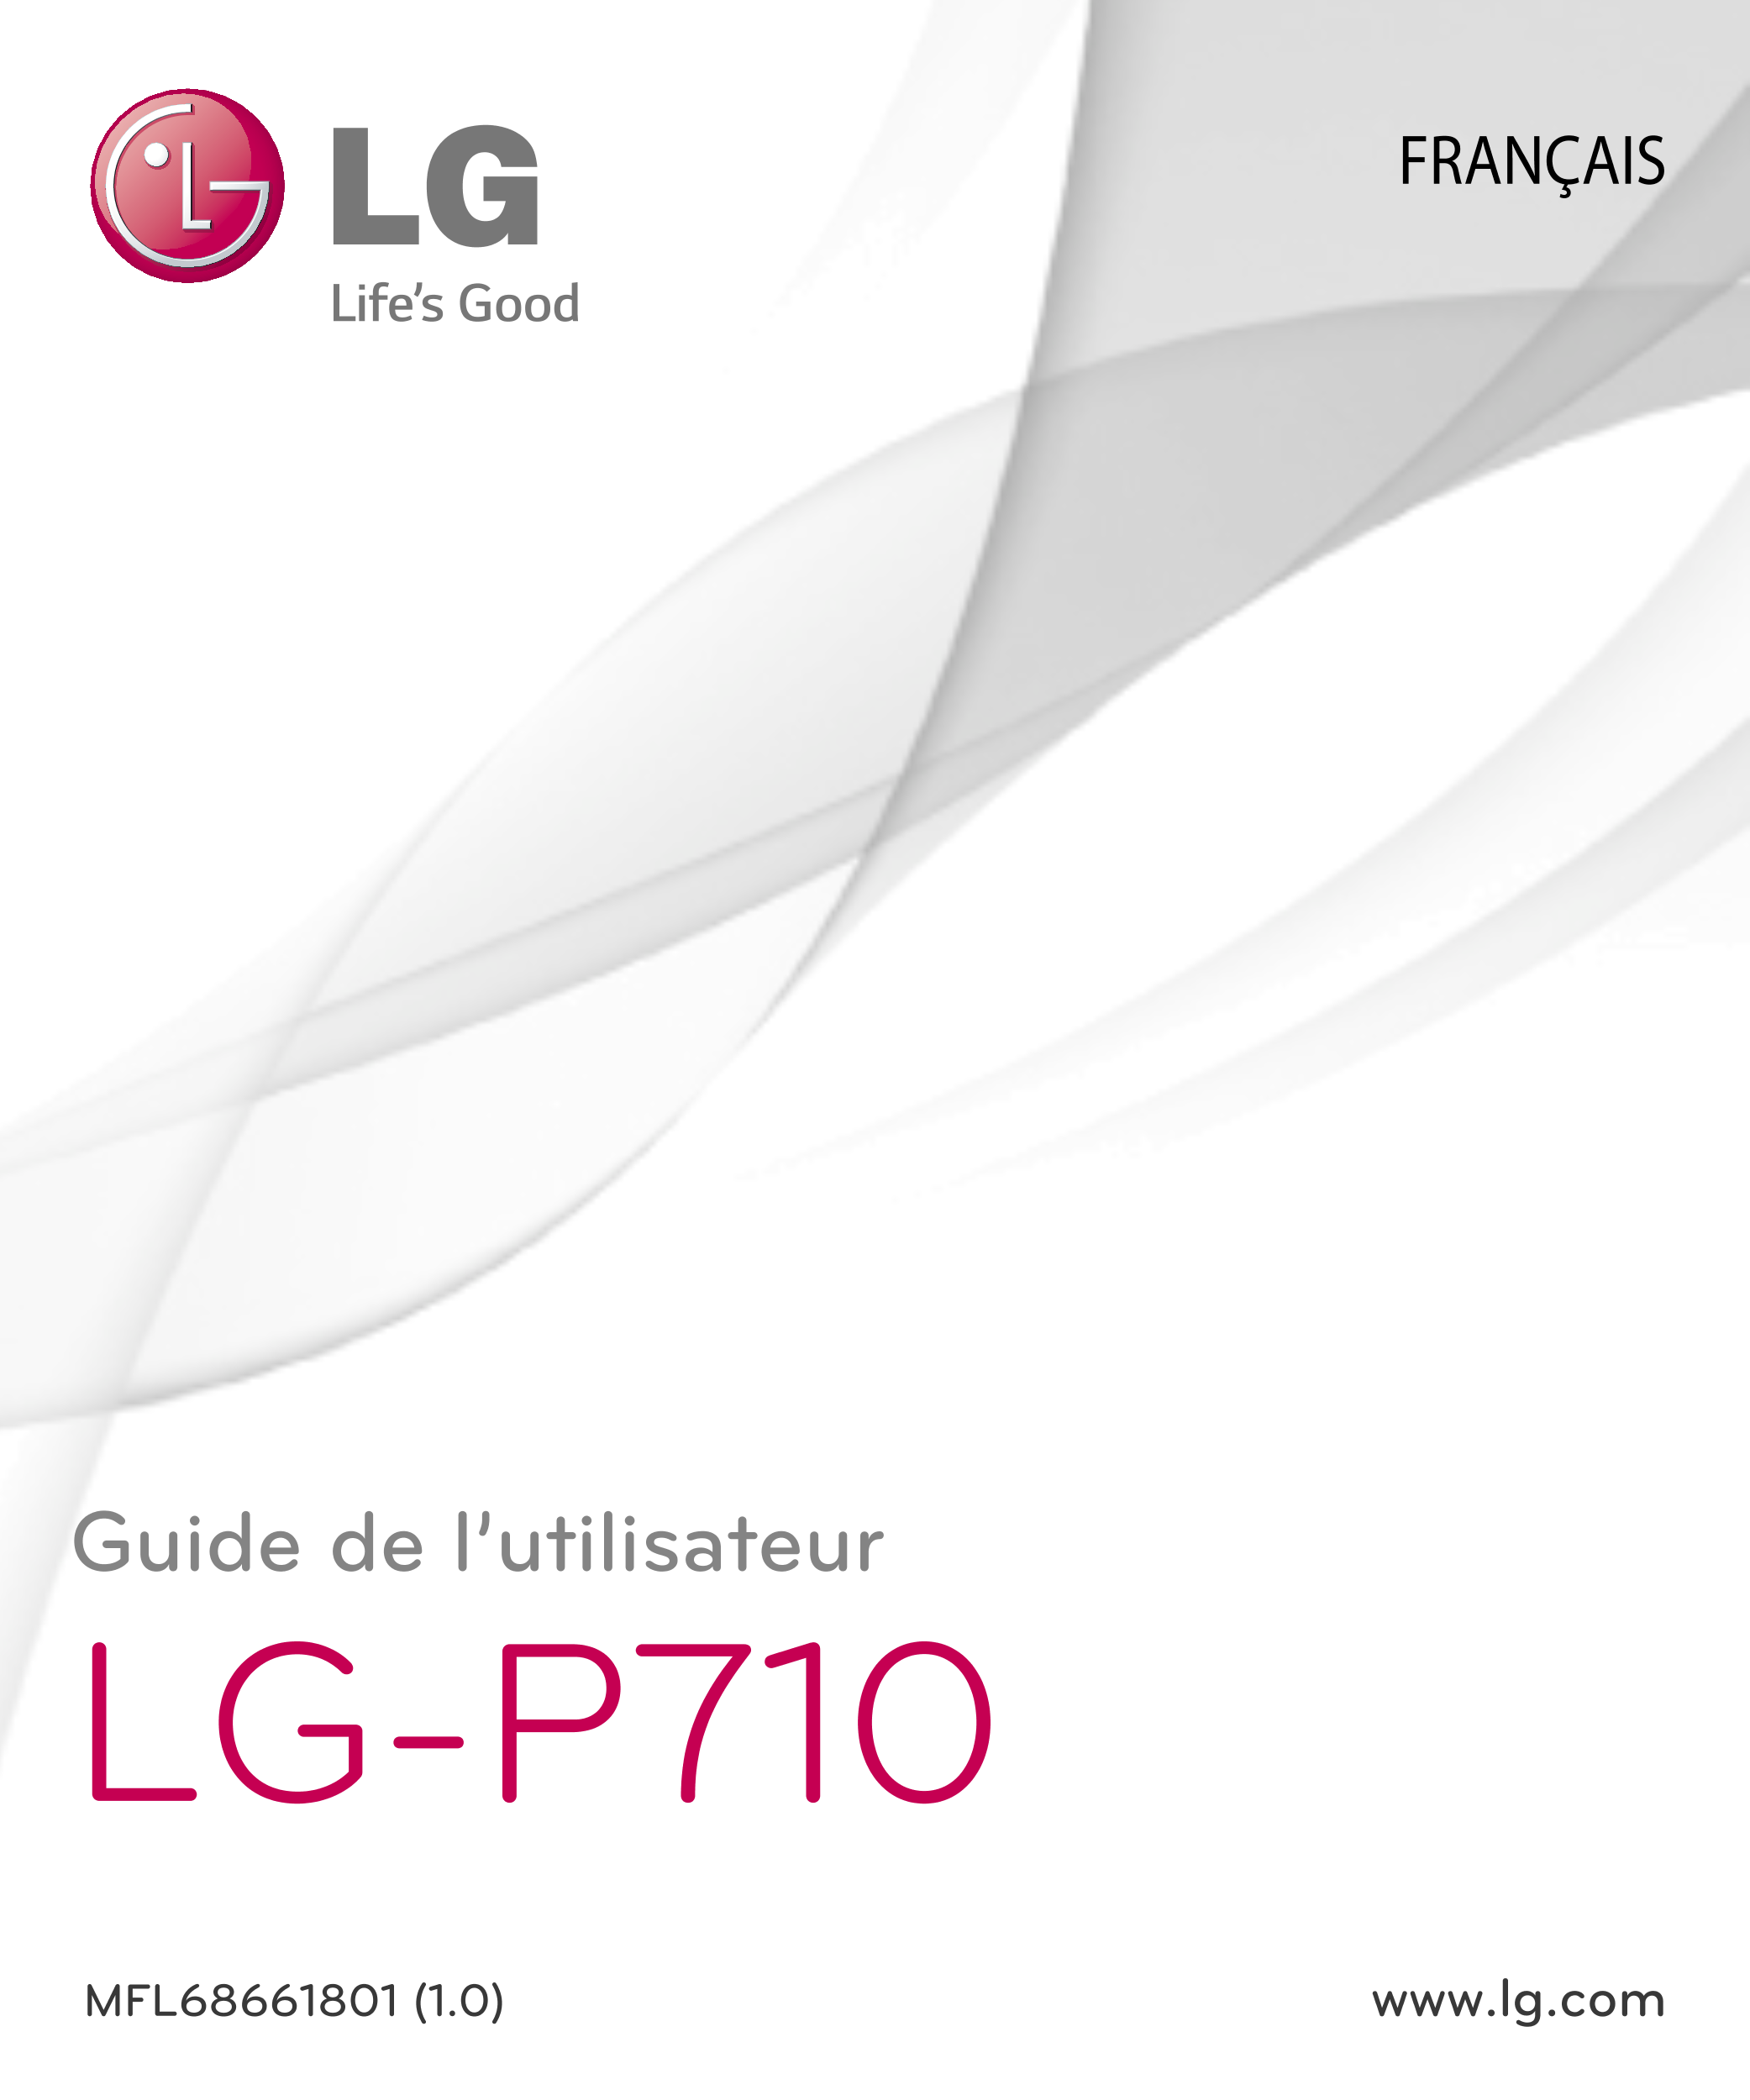 FRANÇAIS
Guide de l’utilisateur
LG-P710
MFL68661801 (1.0)  www.lg.com